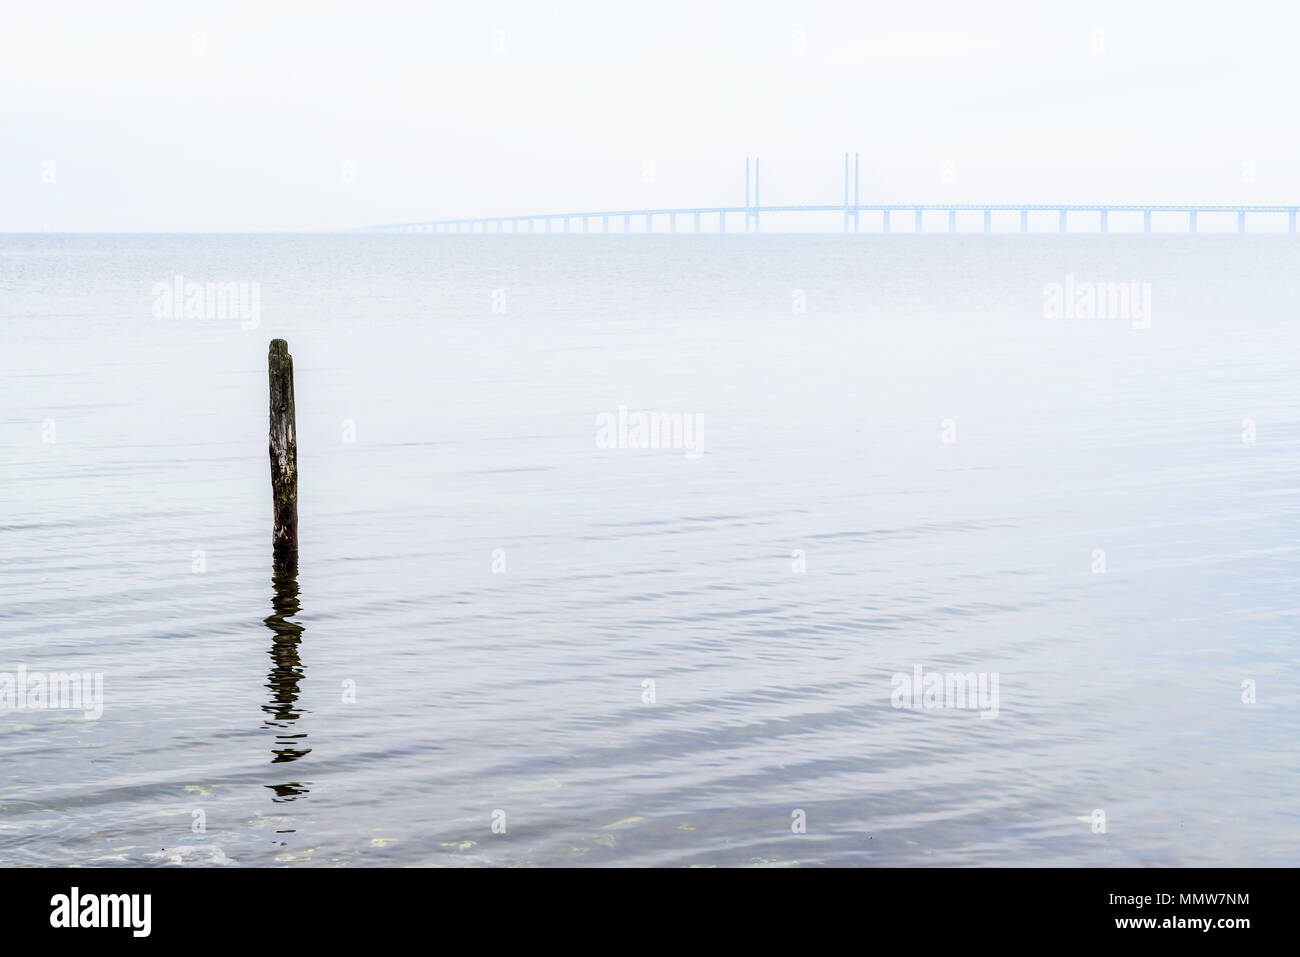 Kalgshamn, Schweden - Liegeplatz pole Allein im Meer an einer ruhigen und nebliger Tag. Die Øresund-Brücke ist in der fernen Nebel sichtbar. Stockfoto